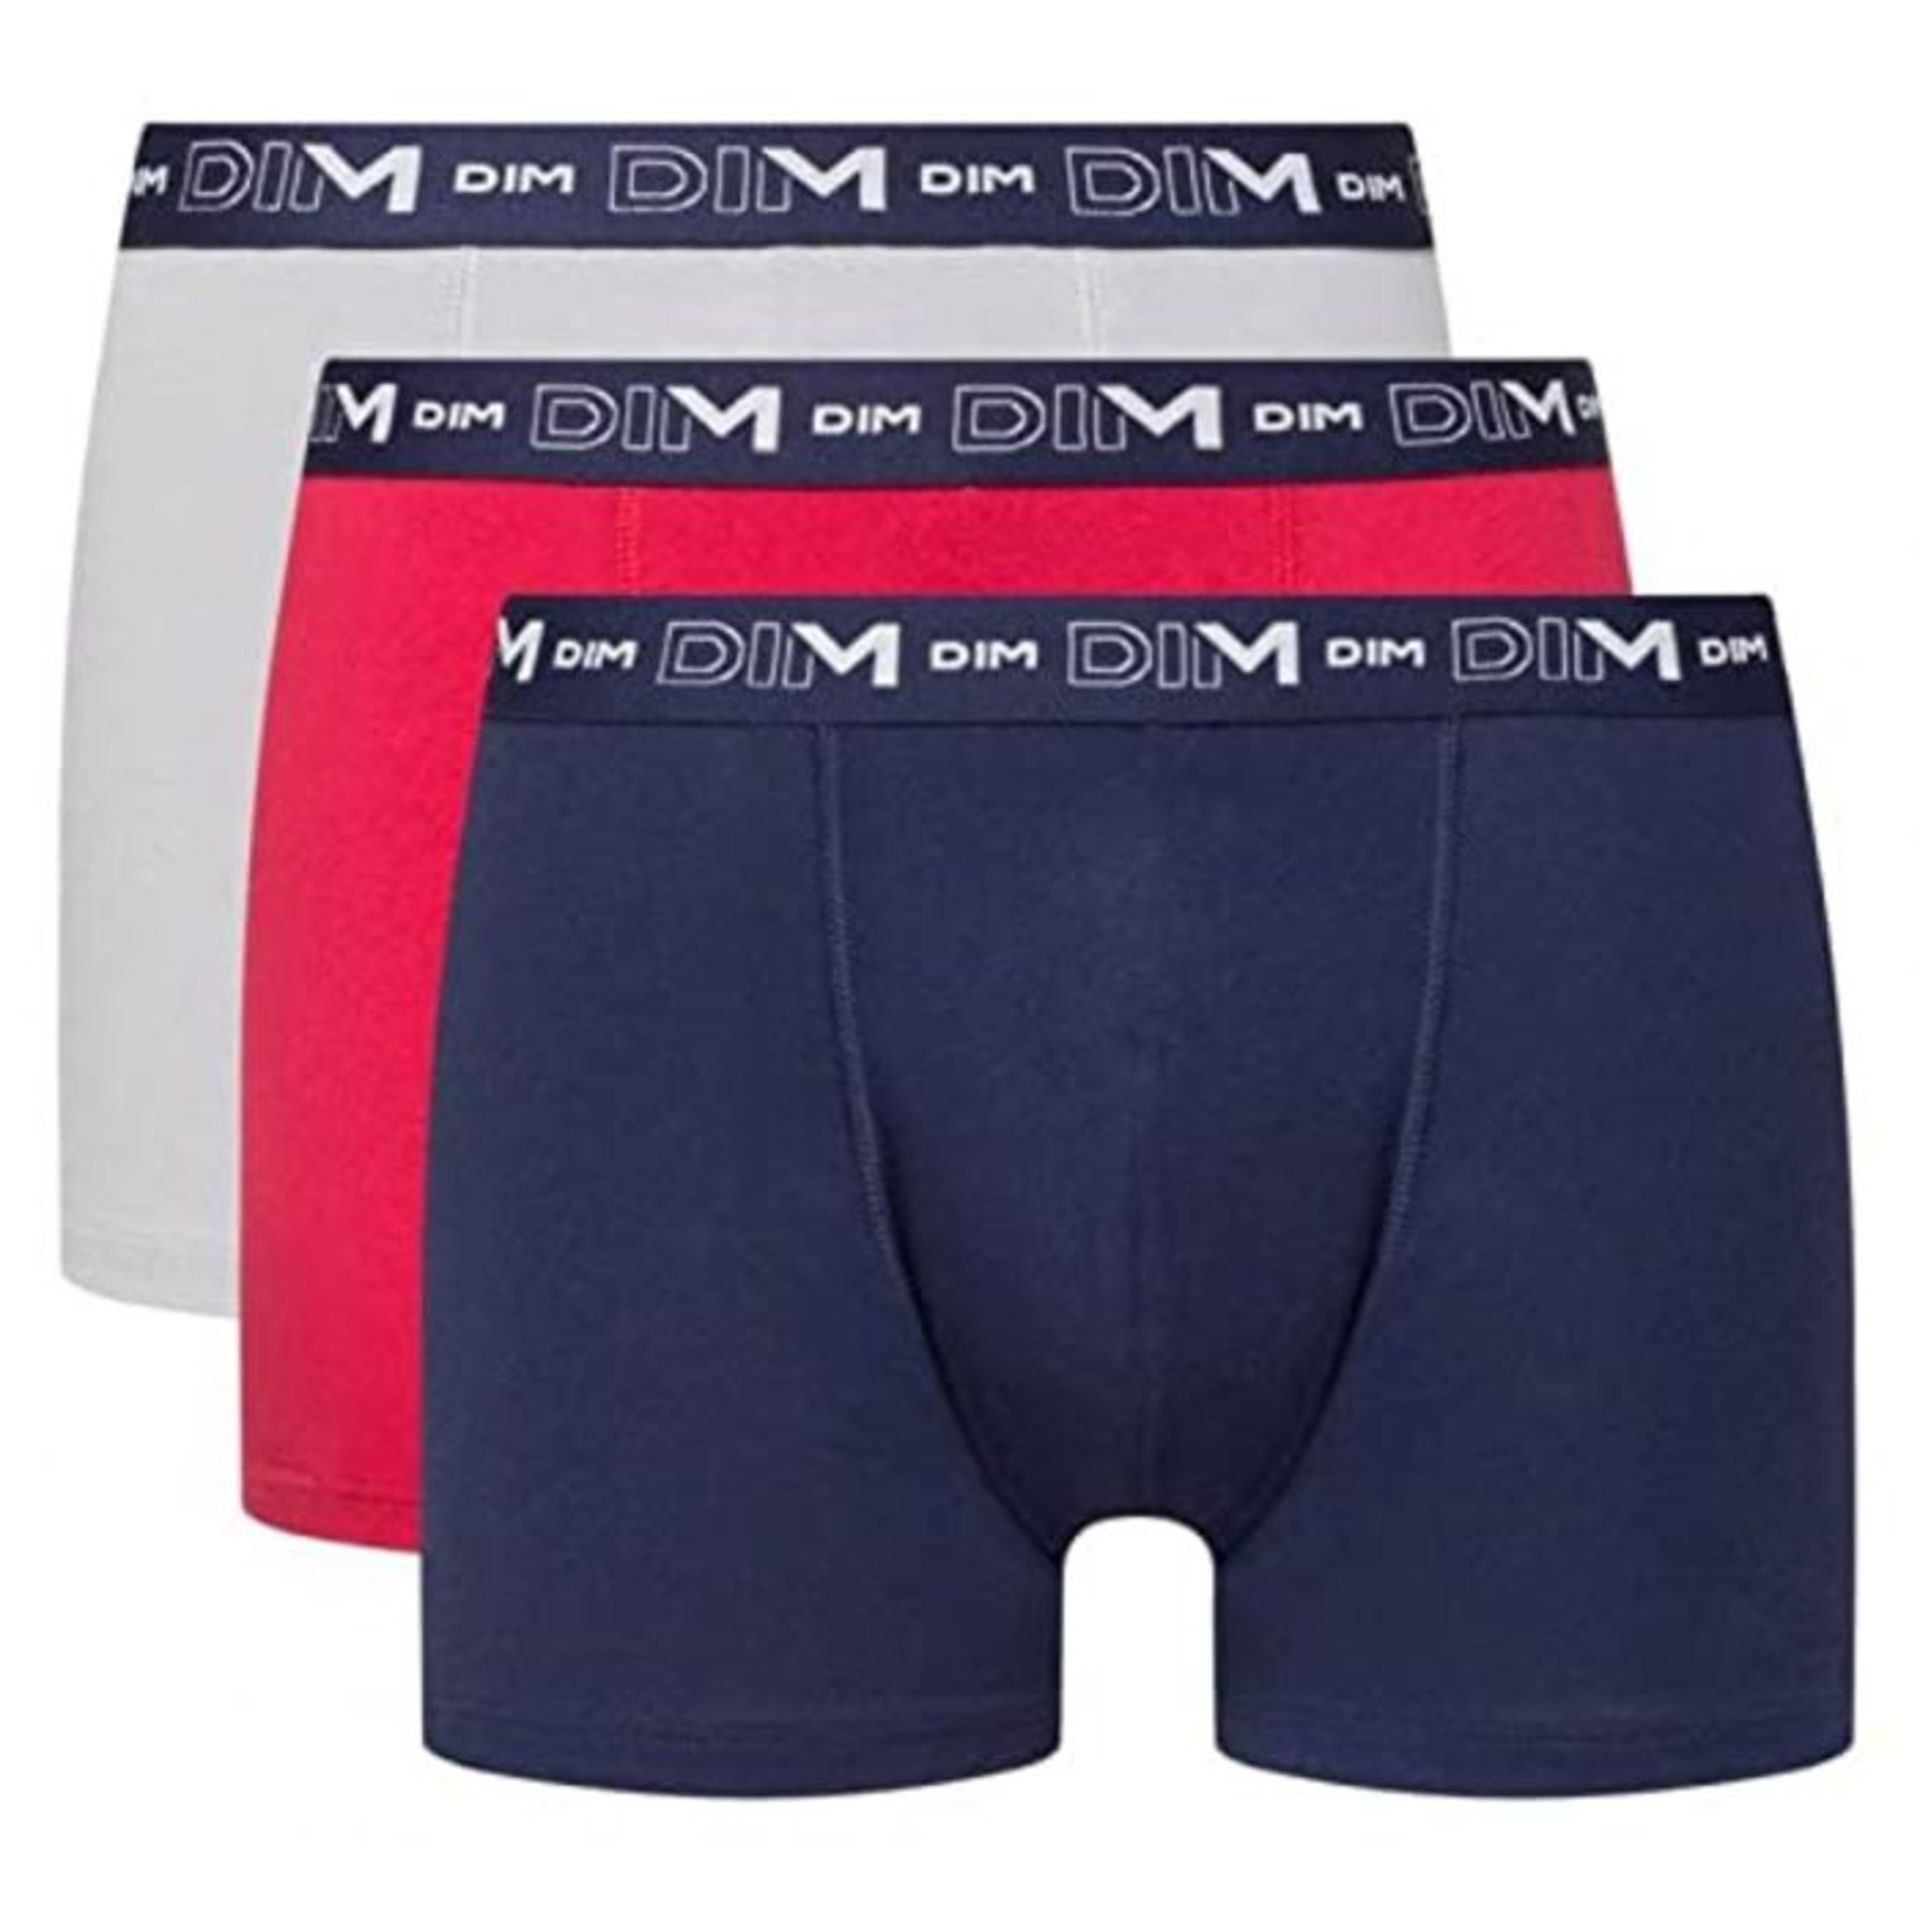 DIM Men's Boxer Cotton Stretch Doppelpack Shorts, Bleu Denim/Rouge Topaze/Acier, L (Pa